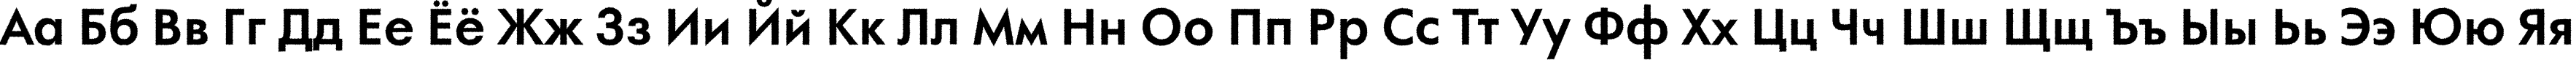 Пример написания русского алфавита шрифтом a_FuturaOrtoRg Bold